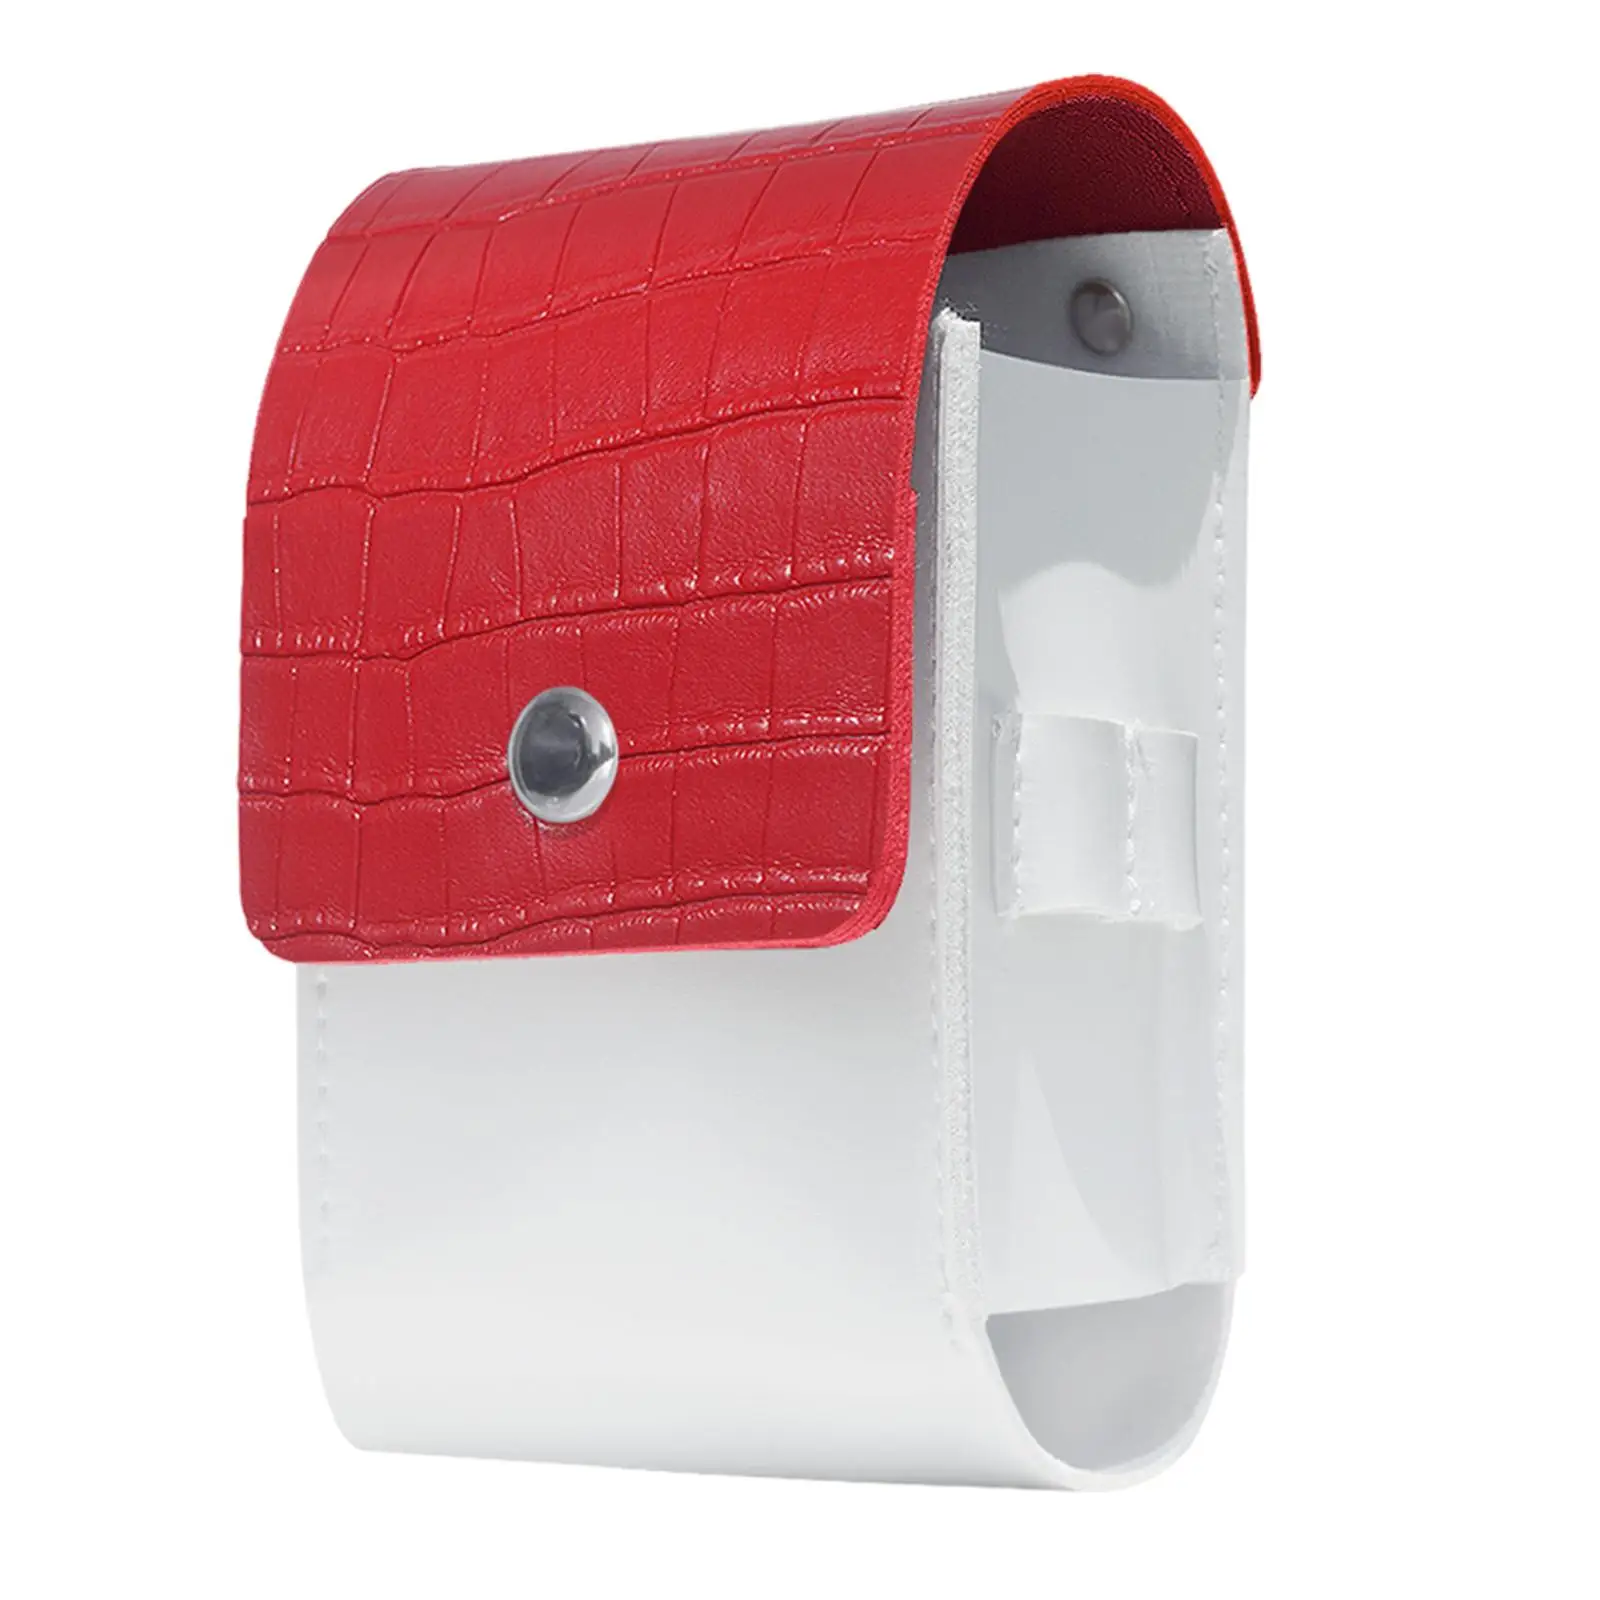 Golf Rangefinder Case Protector Range Finder Carry Bag for Traveling Sports